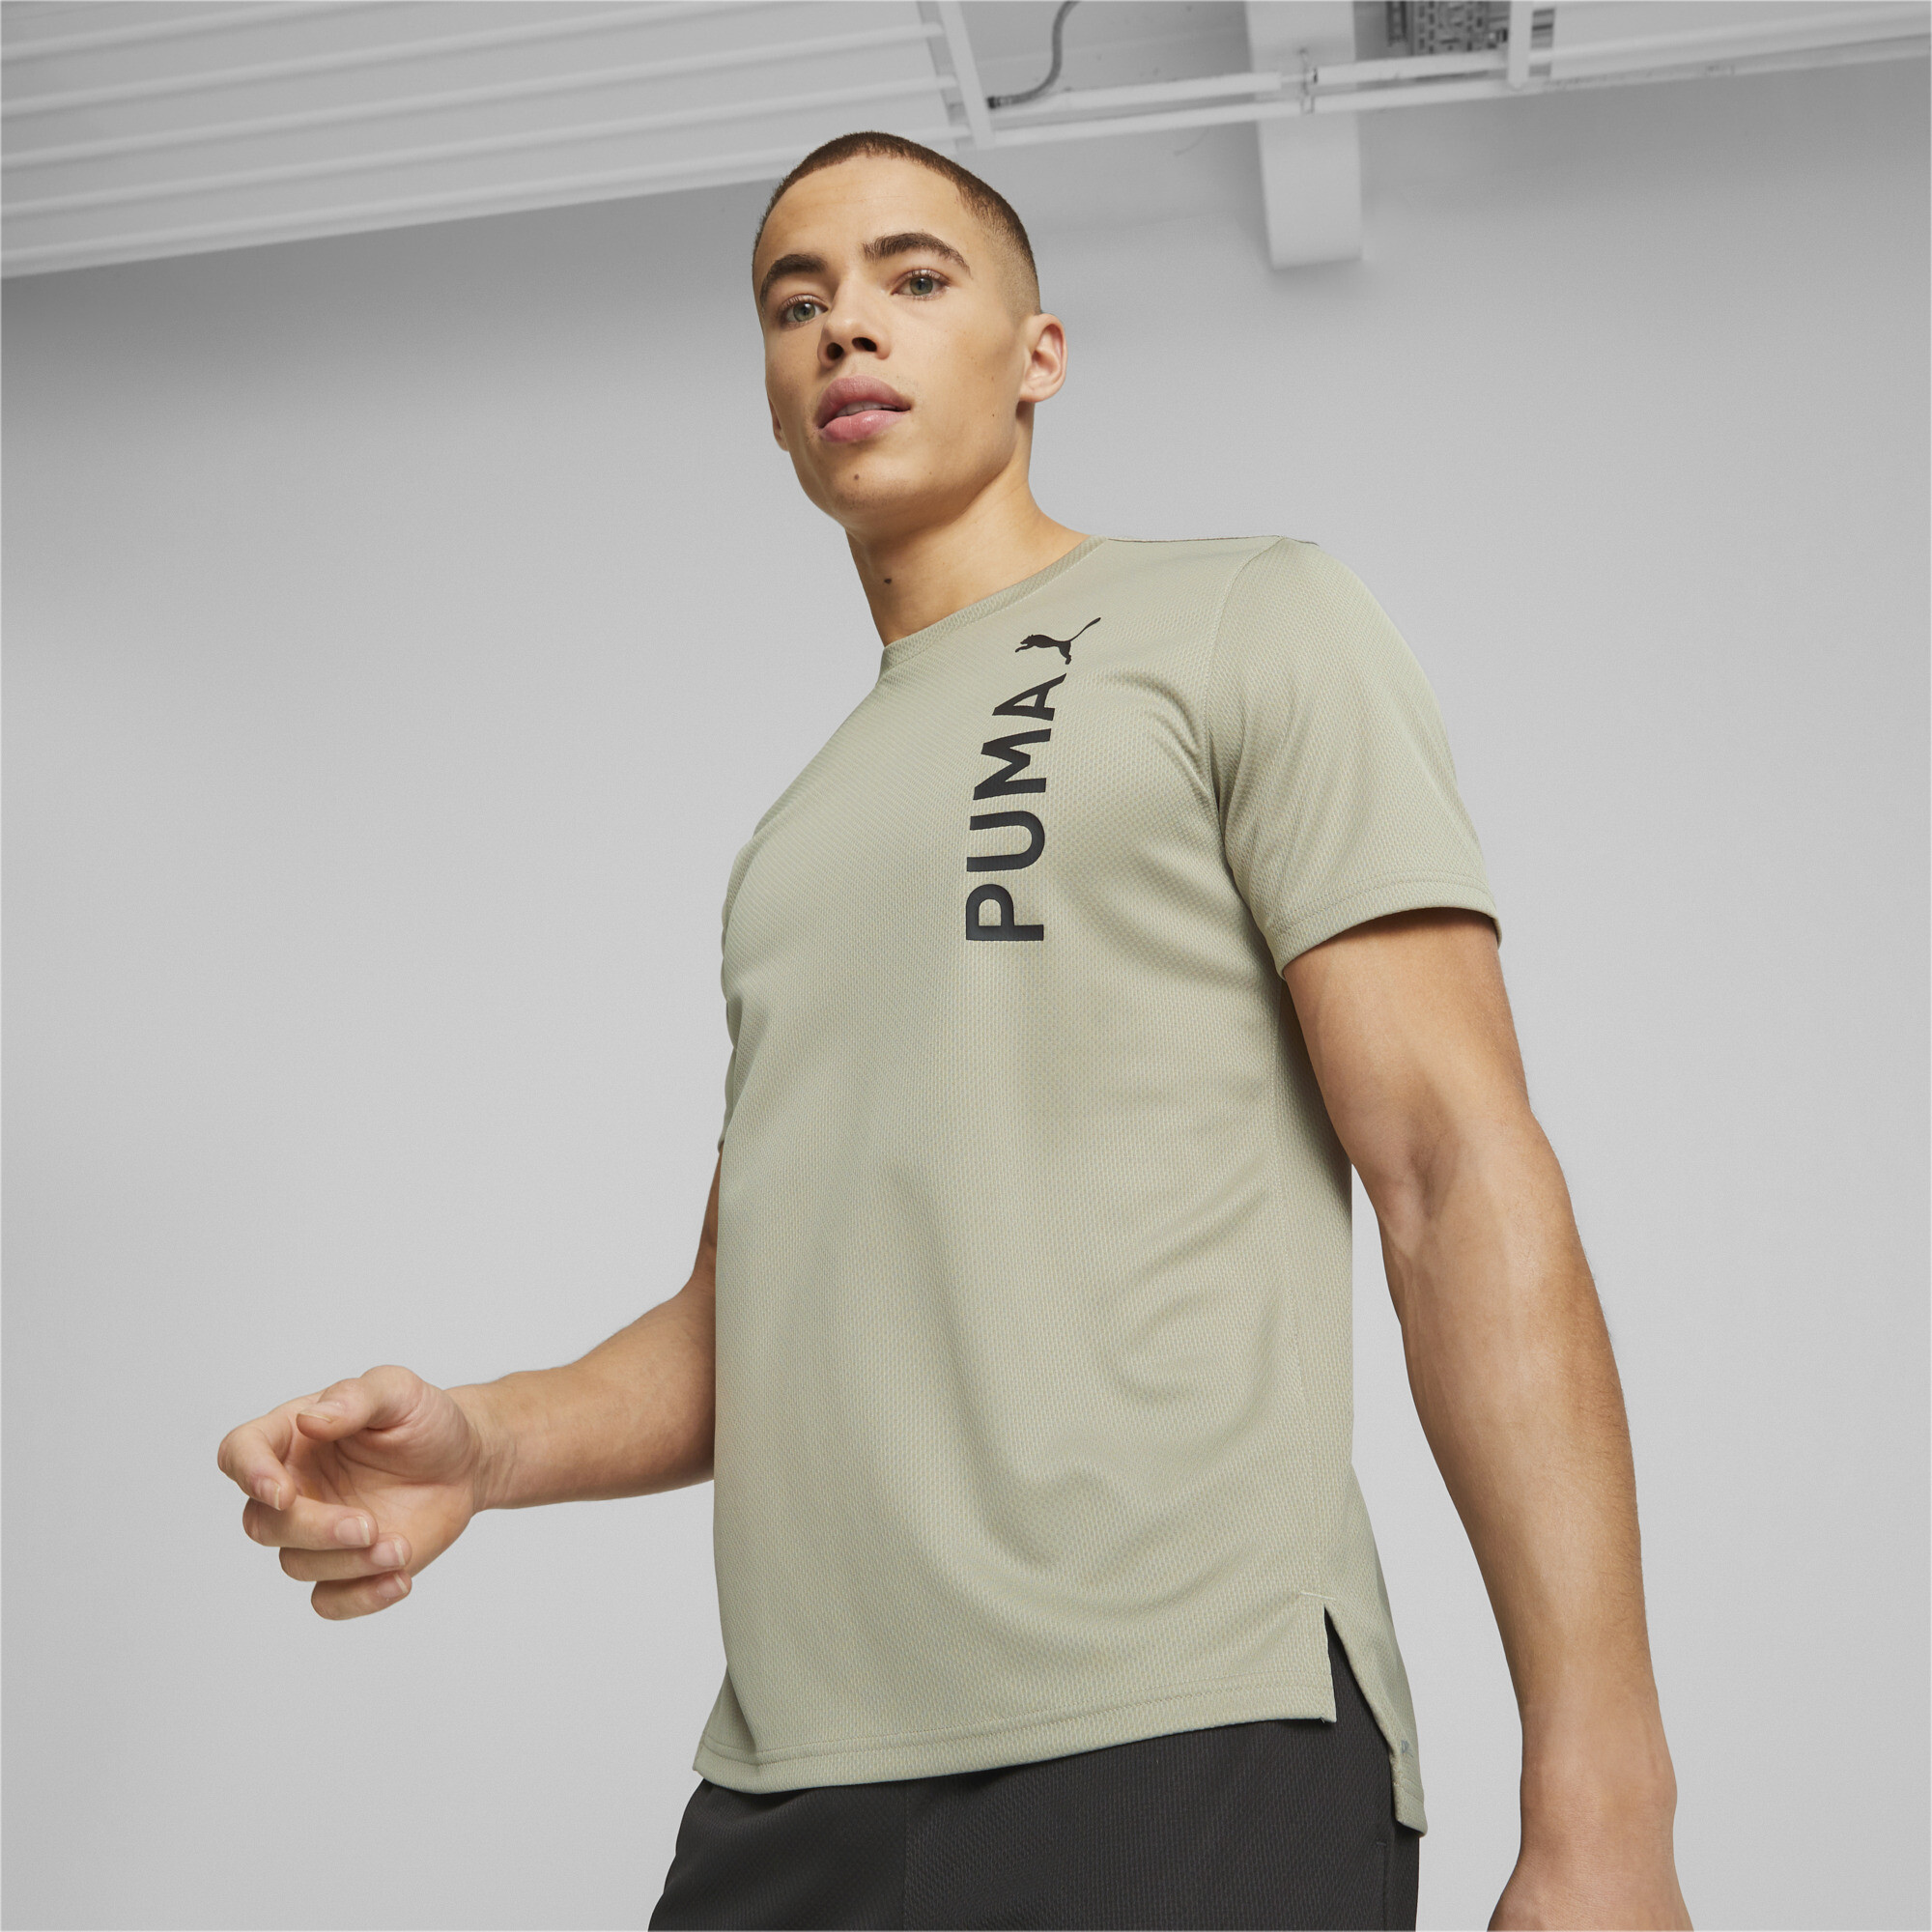 Men's PUMA Fit Ultrabreathe Training T-Shirt Men In Beige, Size XS